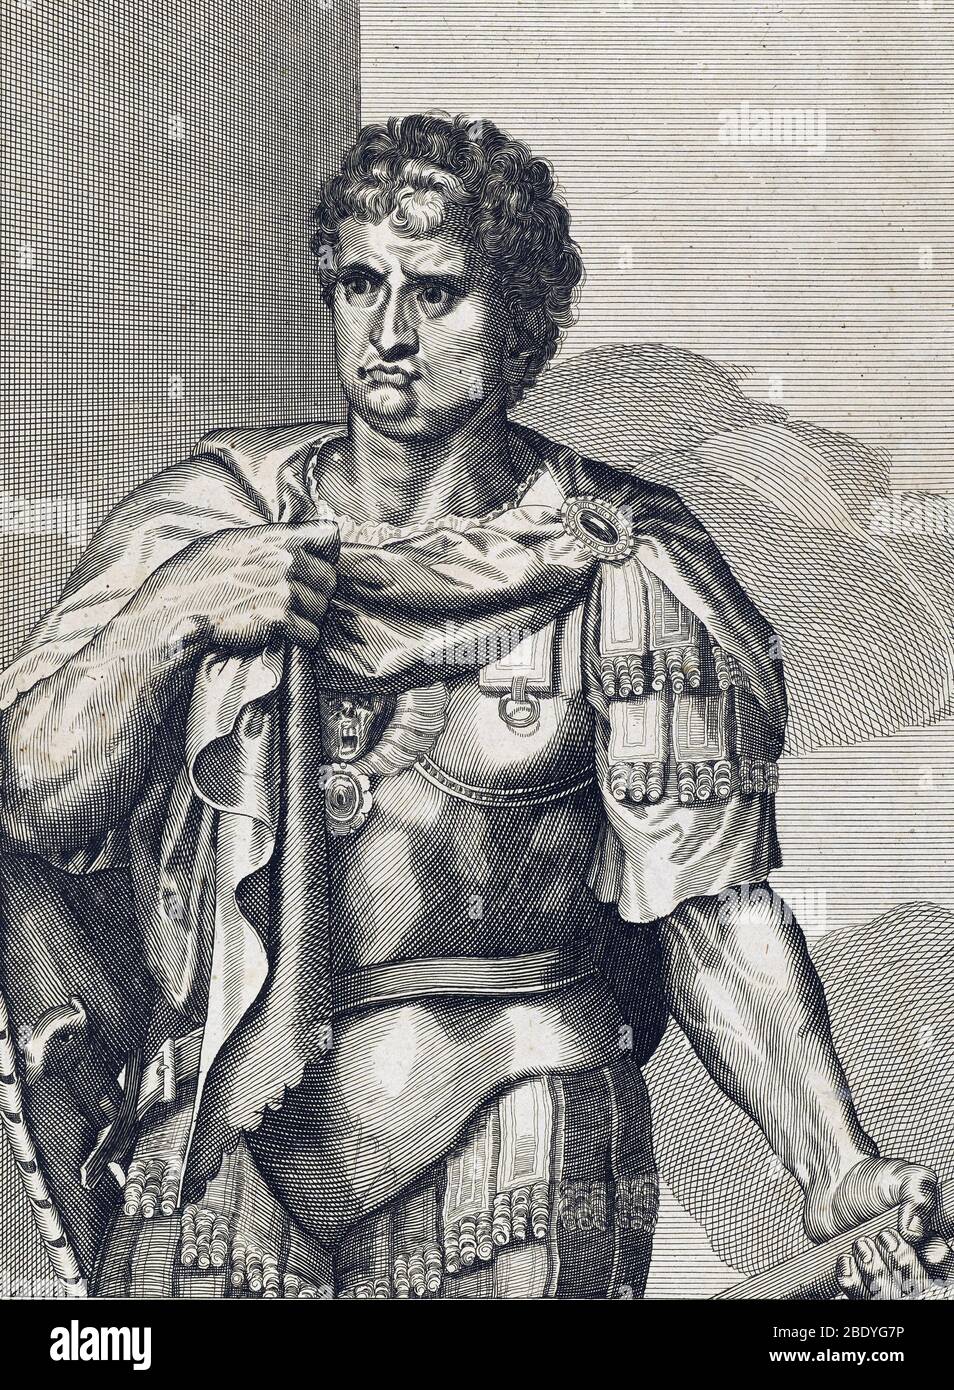 Nero, quinto imperatore di Roma Foto Stock